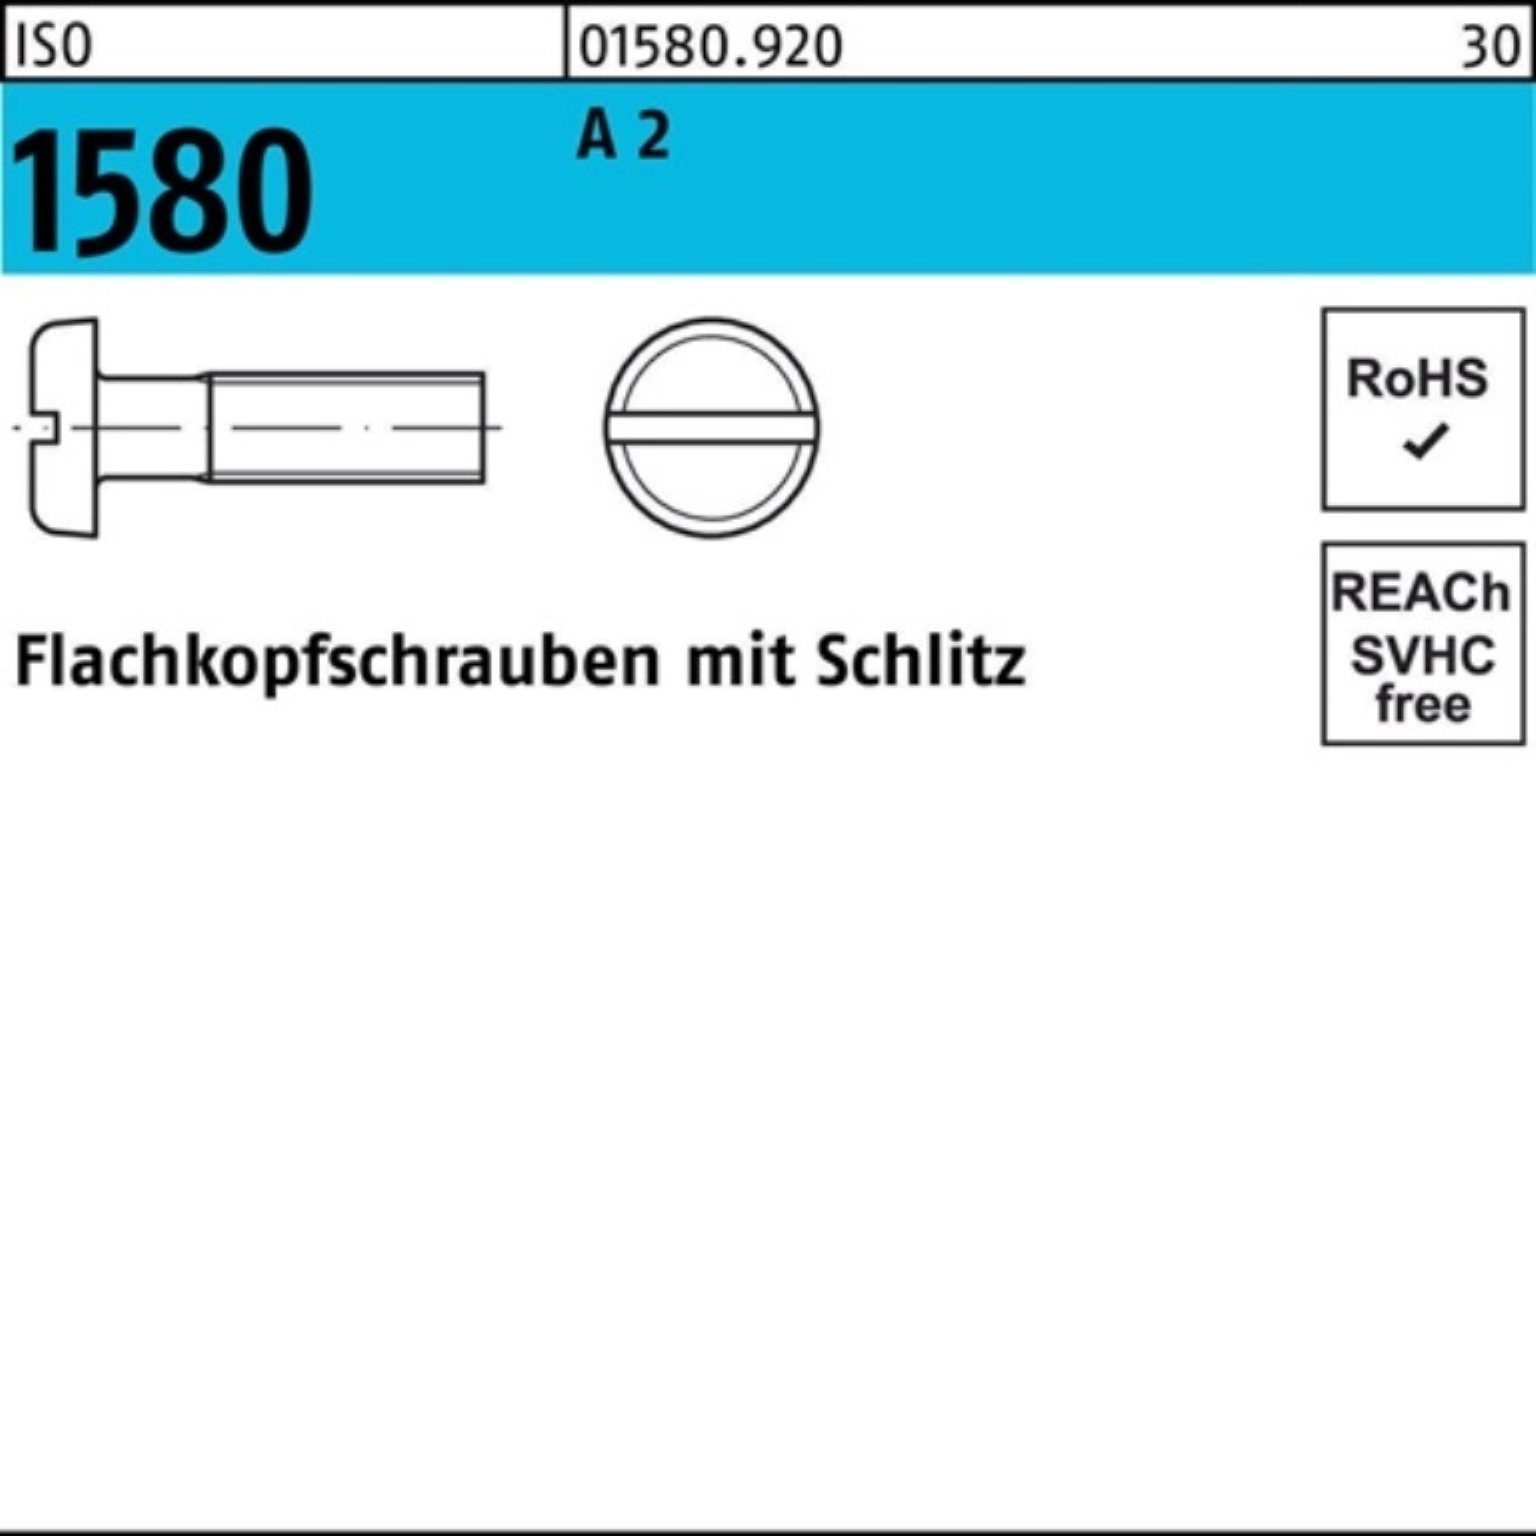 Reyher Schraube 500er Pack Flachkopfschraube M4x Schlitz Stück 500 60 A 2 IS 1580 ISO